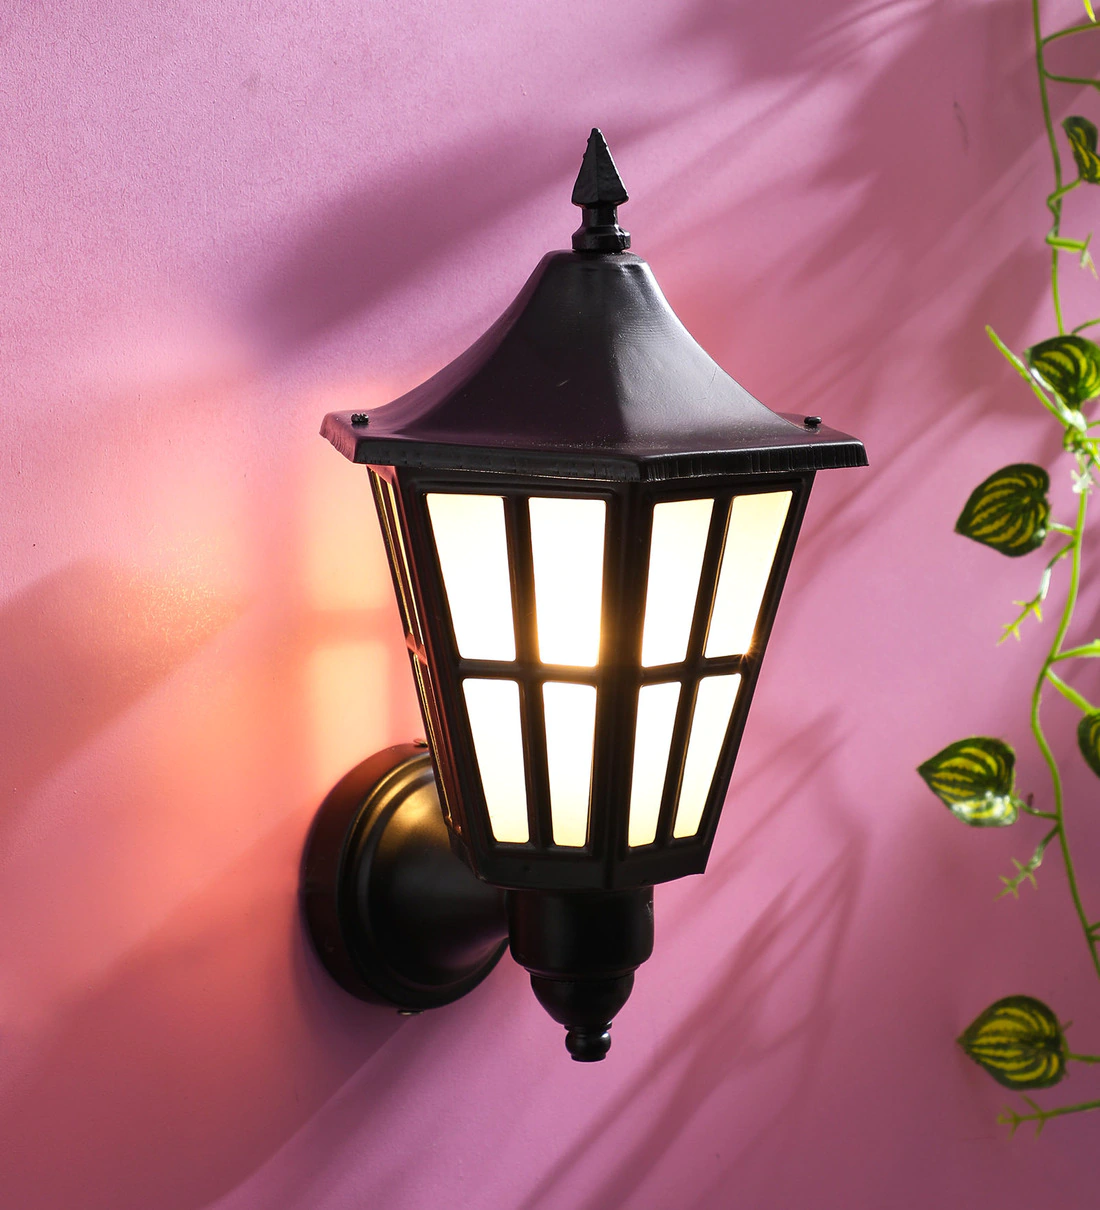 استفاده از لامپ روشنایی حیاط در عربستان ممنوع اعلام شد